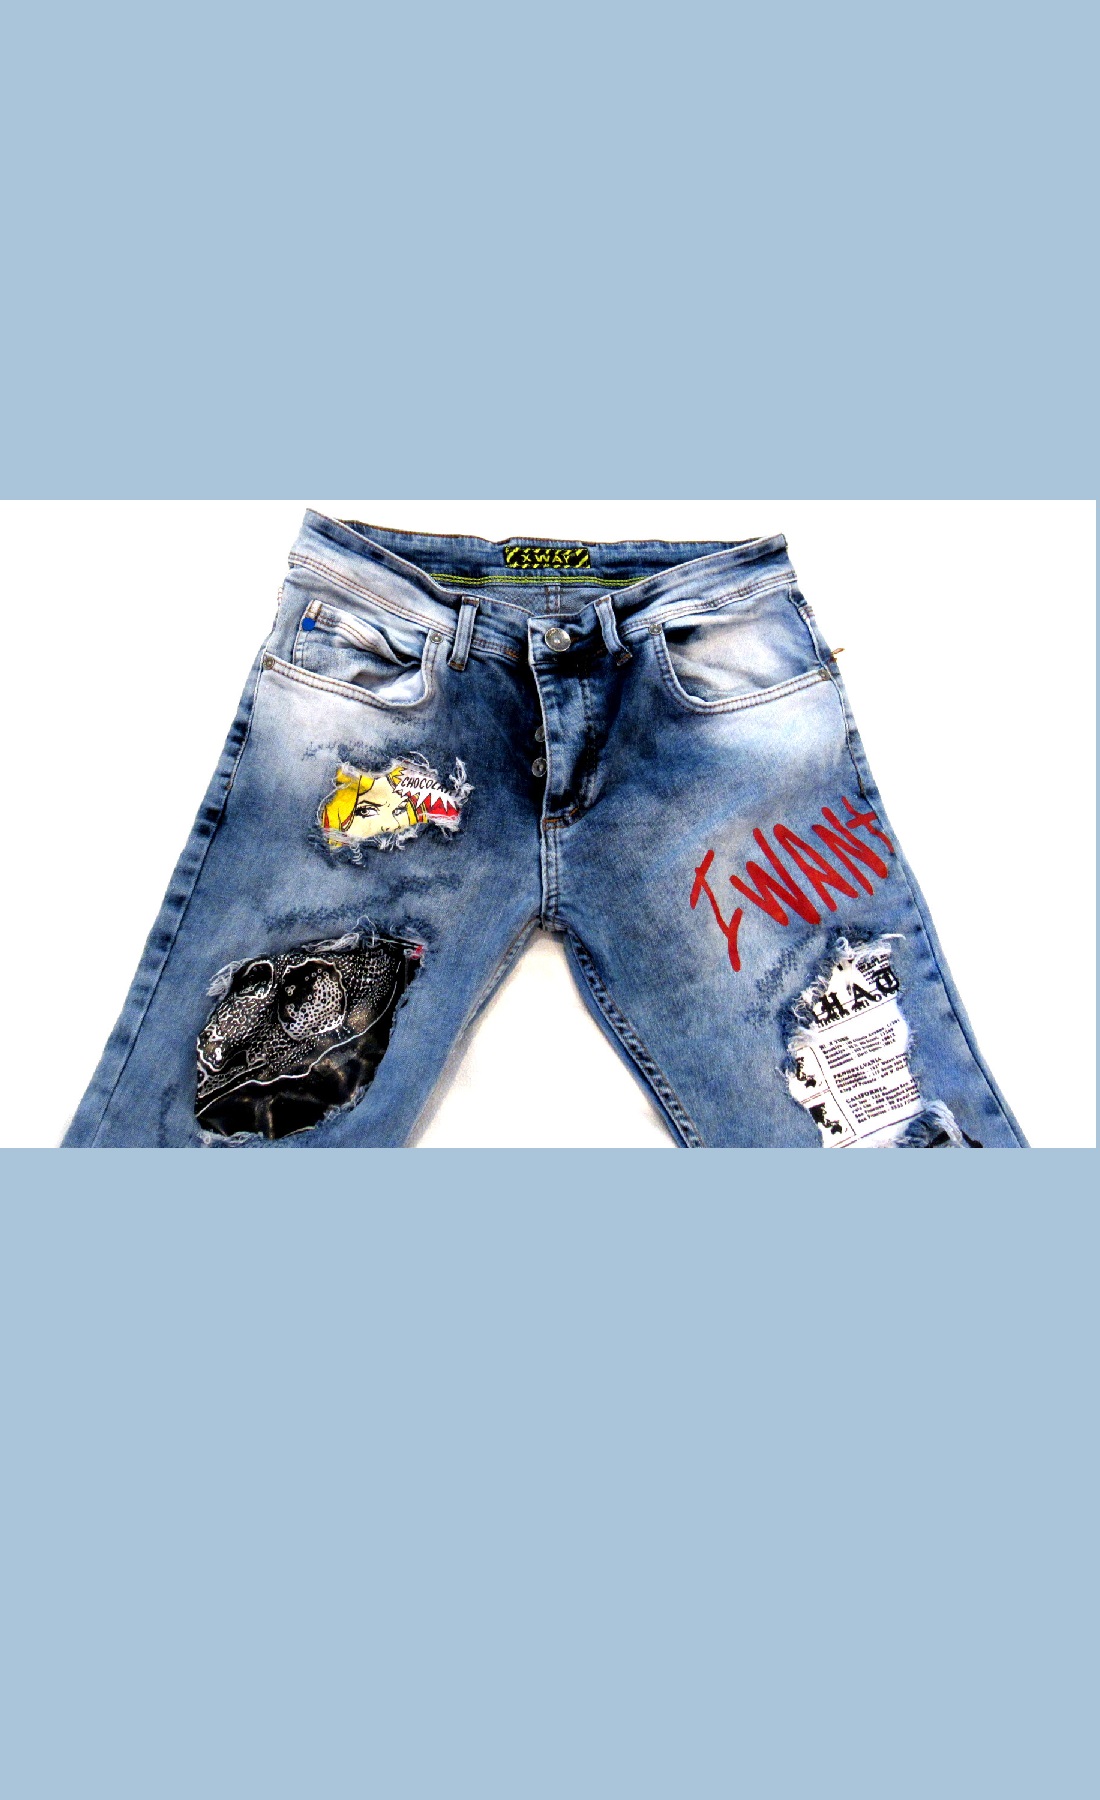 Crazy Lifestyle Jeans |Alt Fashion